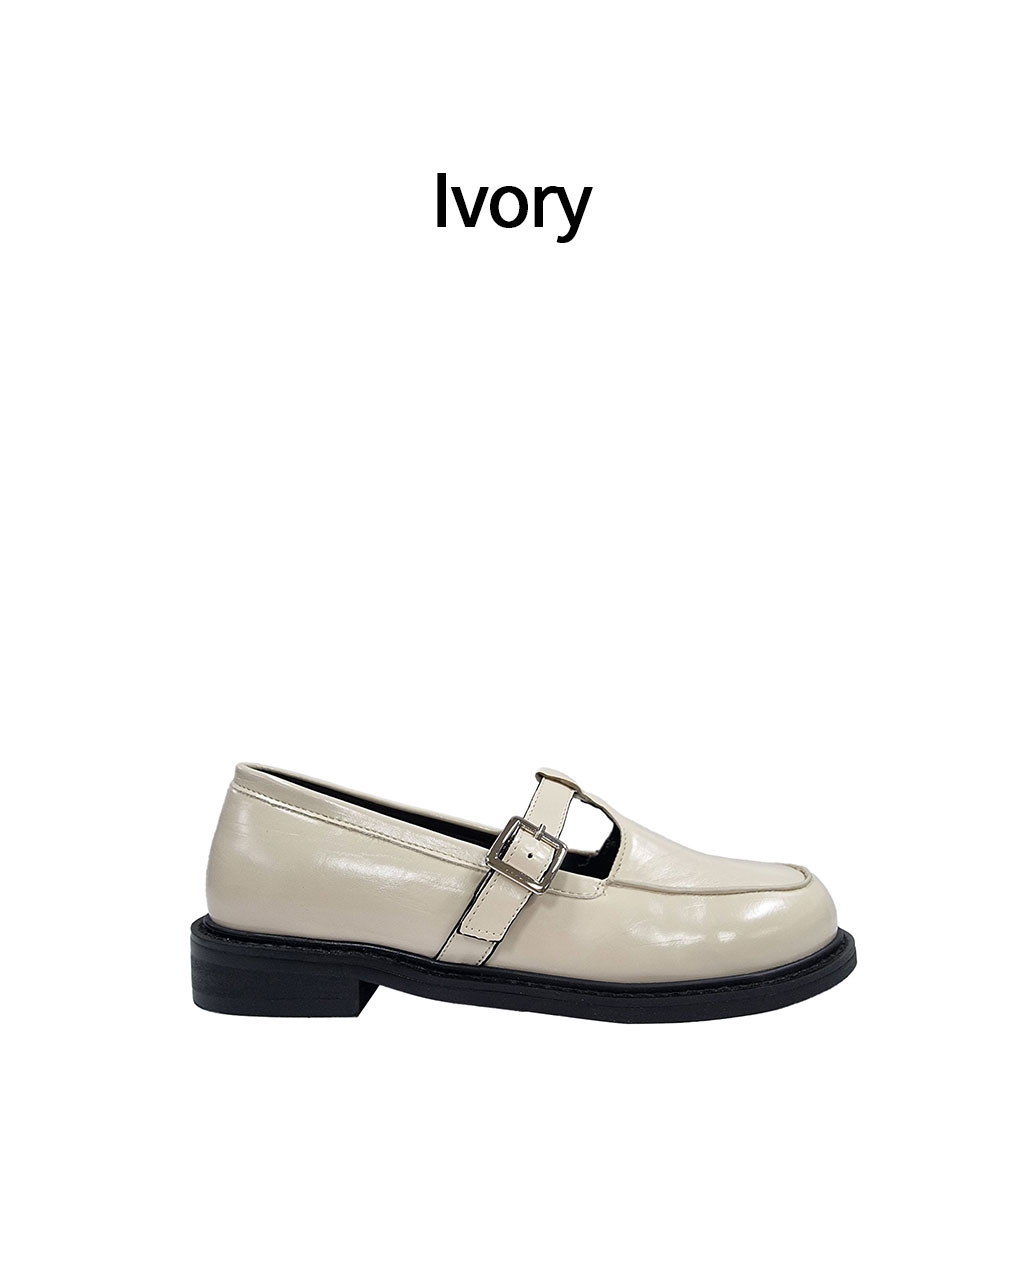 LO-6 - Ivory(̺)